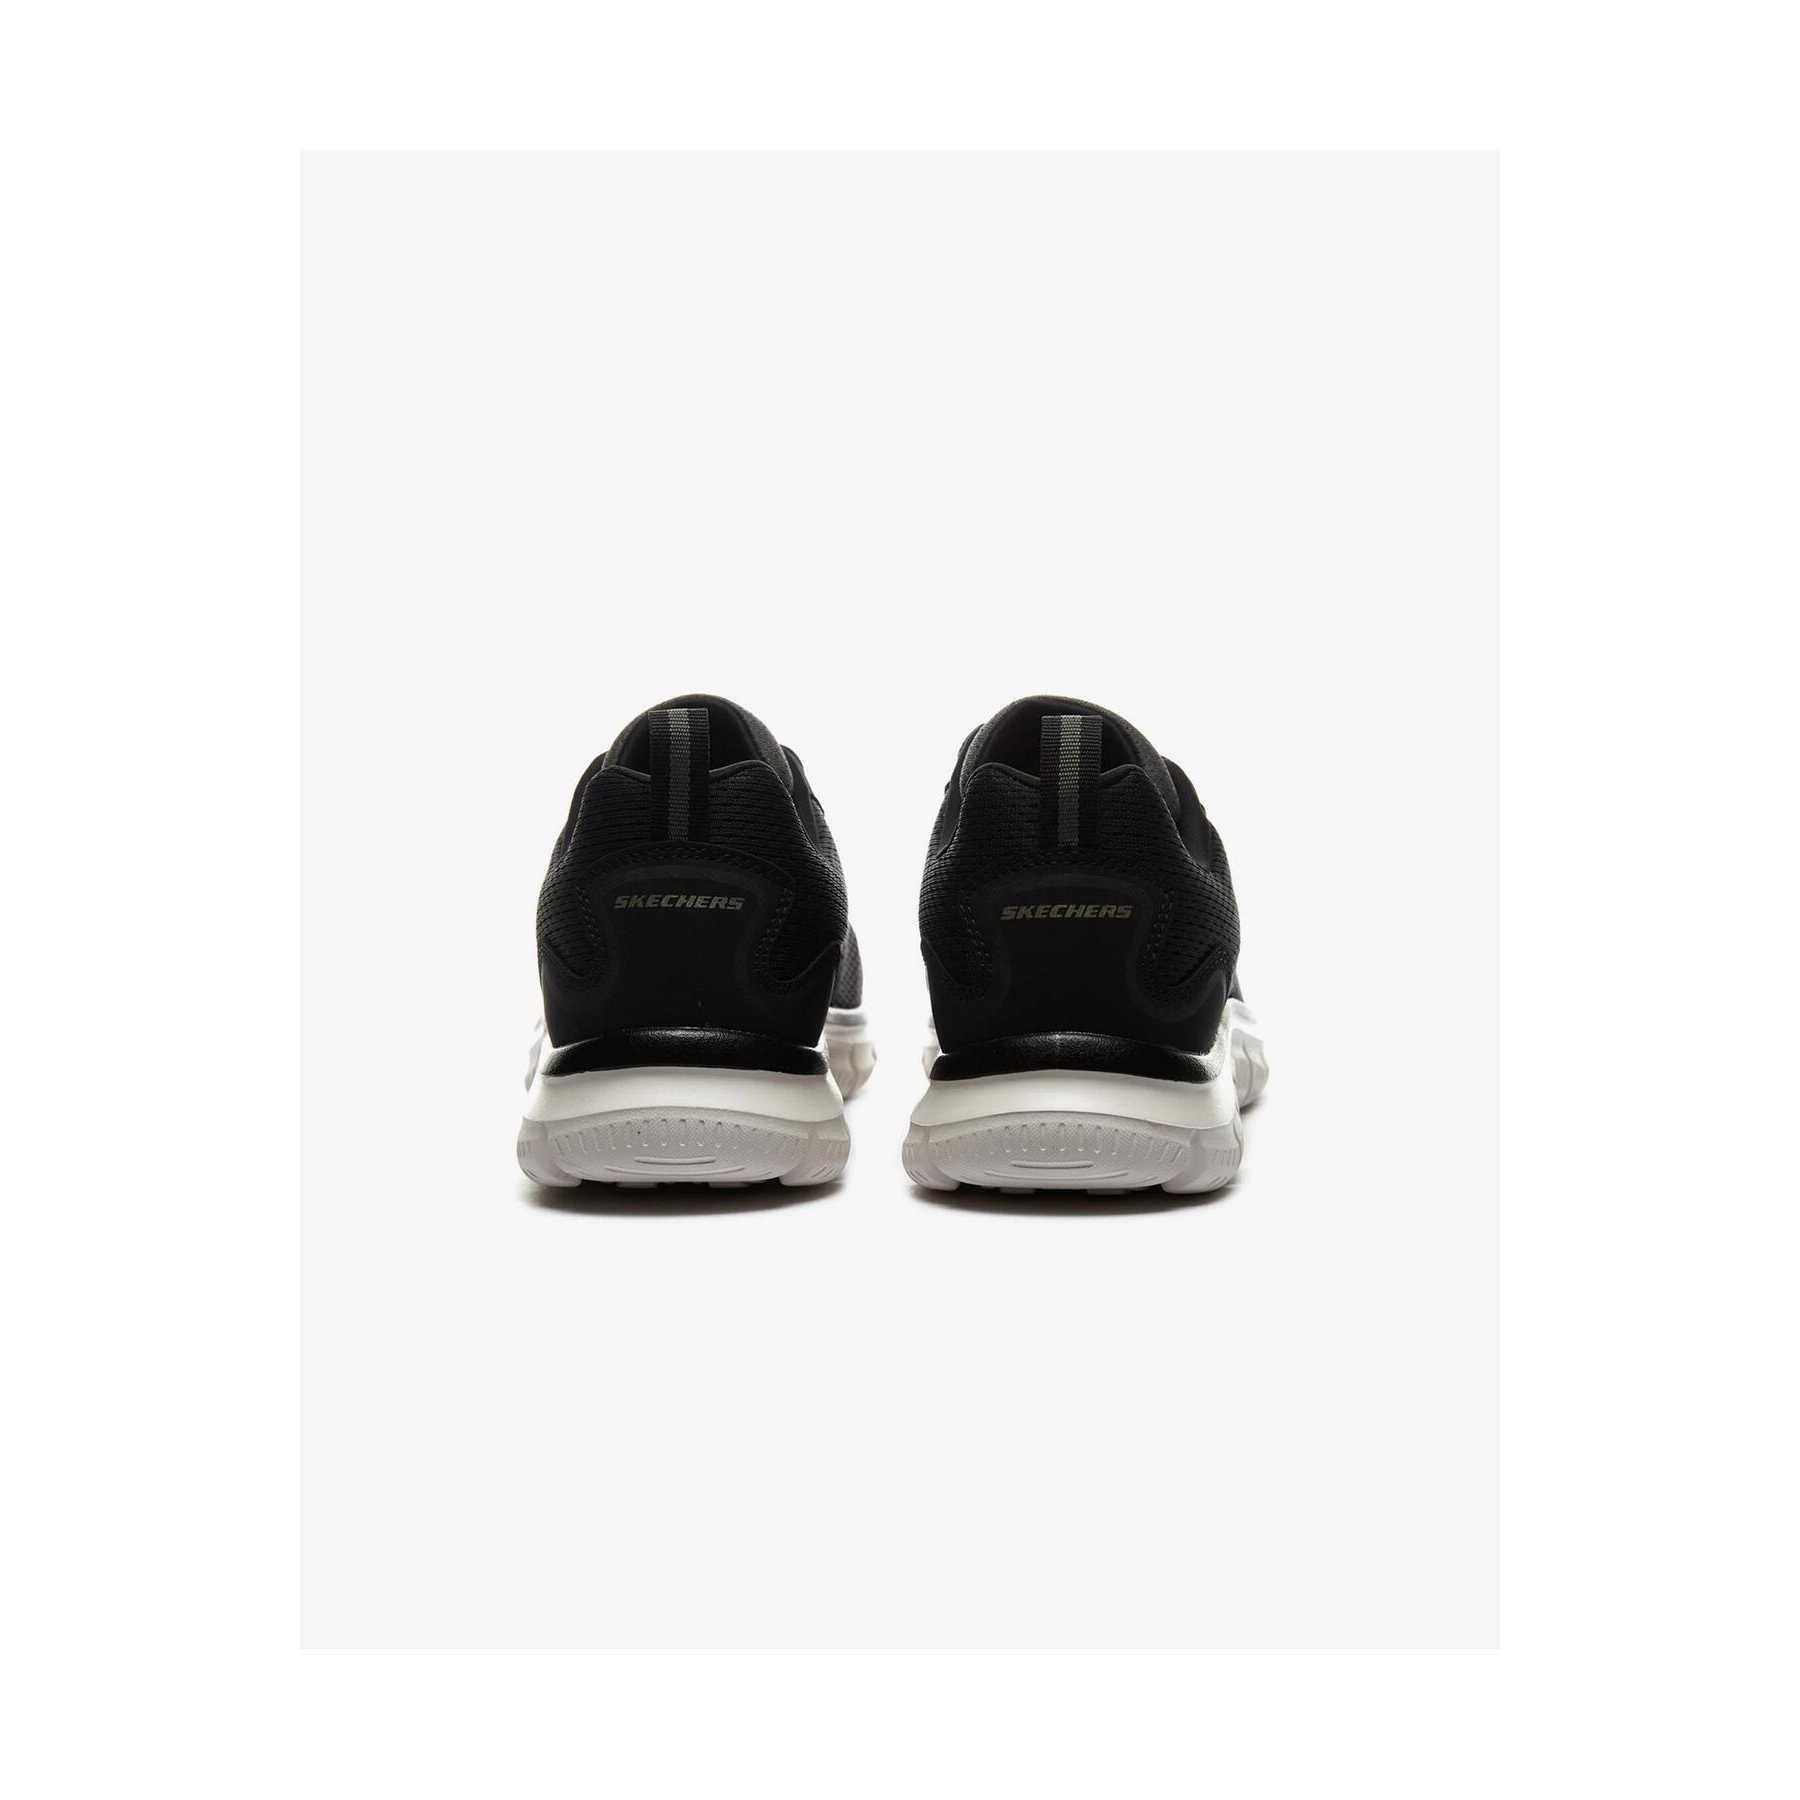 Skechers Ripkent Erkek Haki Yeşil Koşu Ayakkabısı (232399TK OLBK)